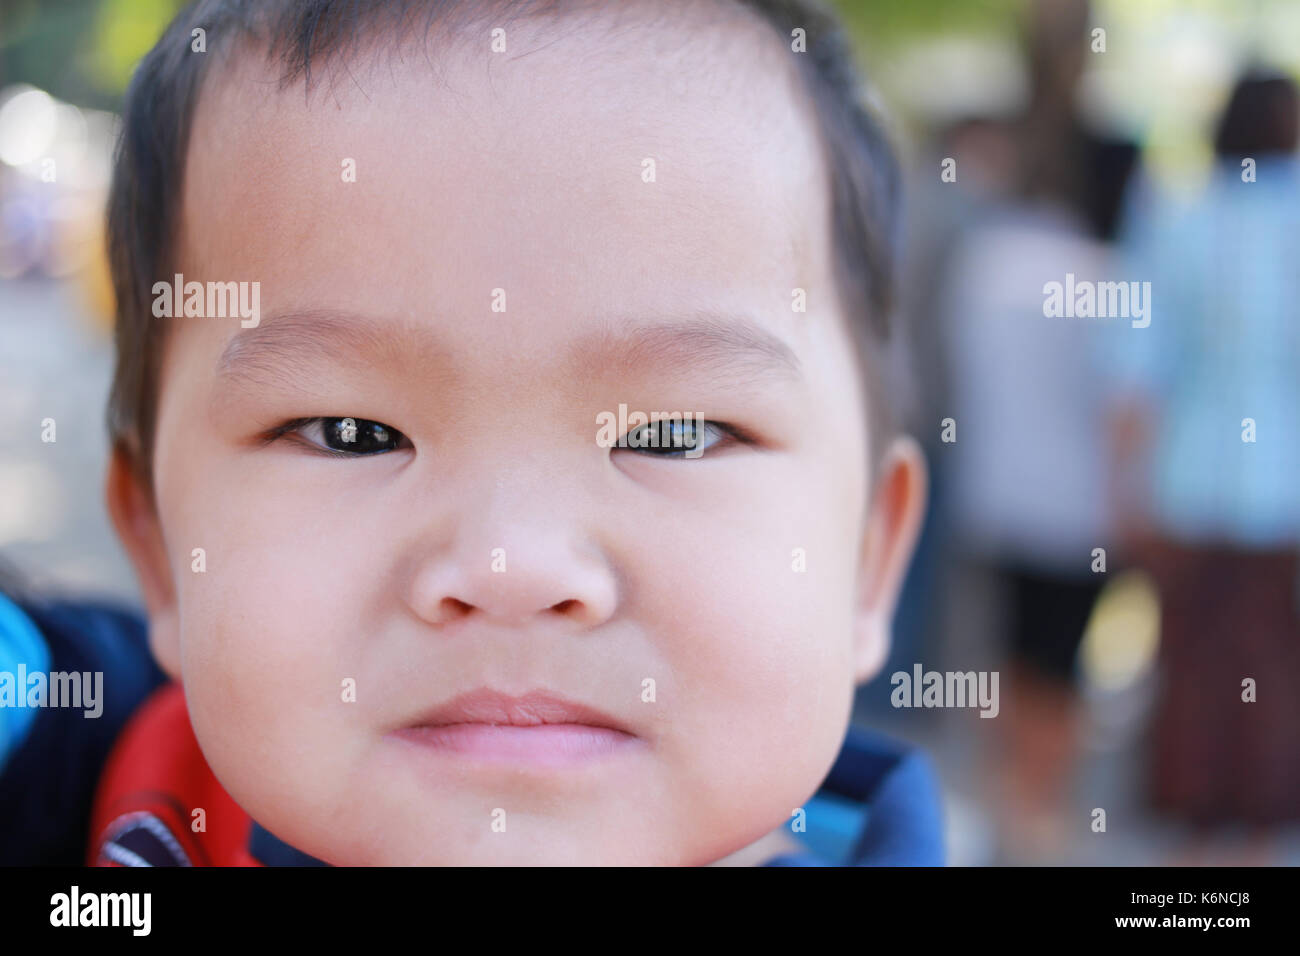 Los rostros de los niños asiáticos en la feliz idea de salud y buen humor. Foto de stock